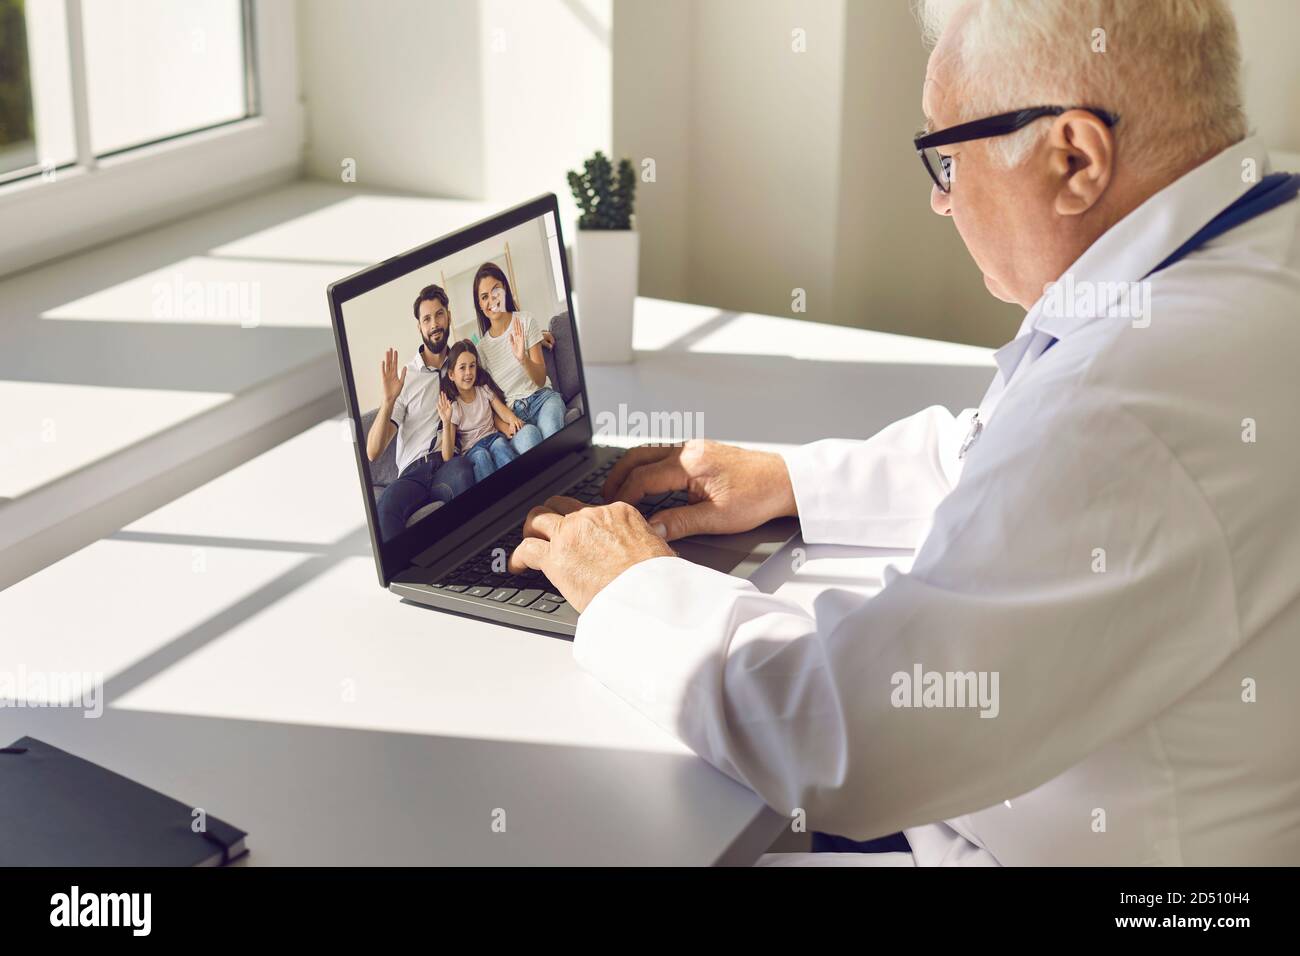 Reifer Oberarzt in Uniform sitzt am Laptop und kommuniziert Mit jungen lächelnden Familie Stockfoto